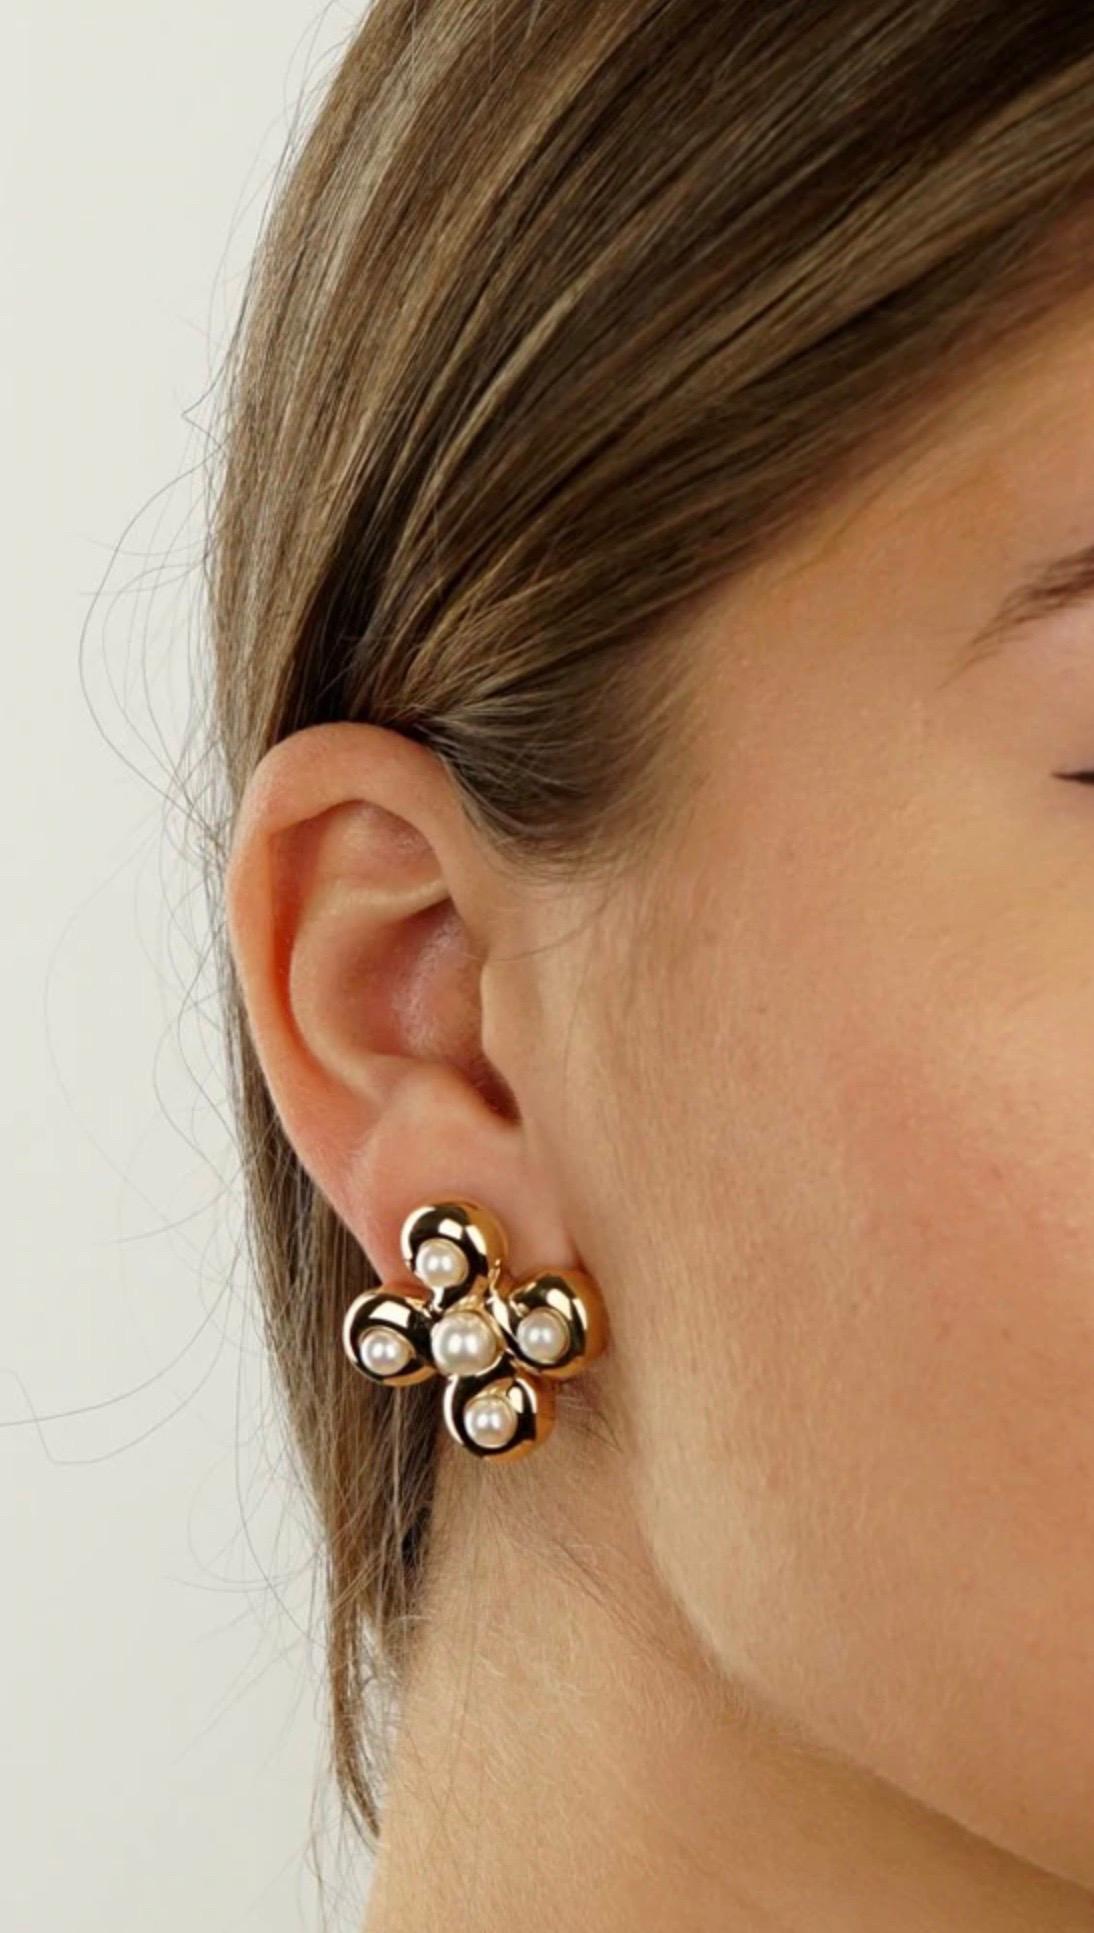 Ein wunderschönes Paar authentischer Chanel-Ohrringe mit weißen Perlen, gefasst in 18 Karat Gelbgold.

Abmessungen: 28mm breit (1.10″)

Bestandsverzeichnis-ID: 0000031